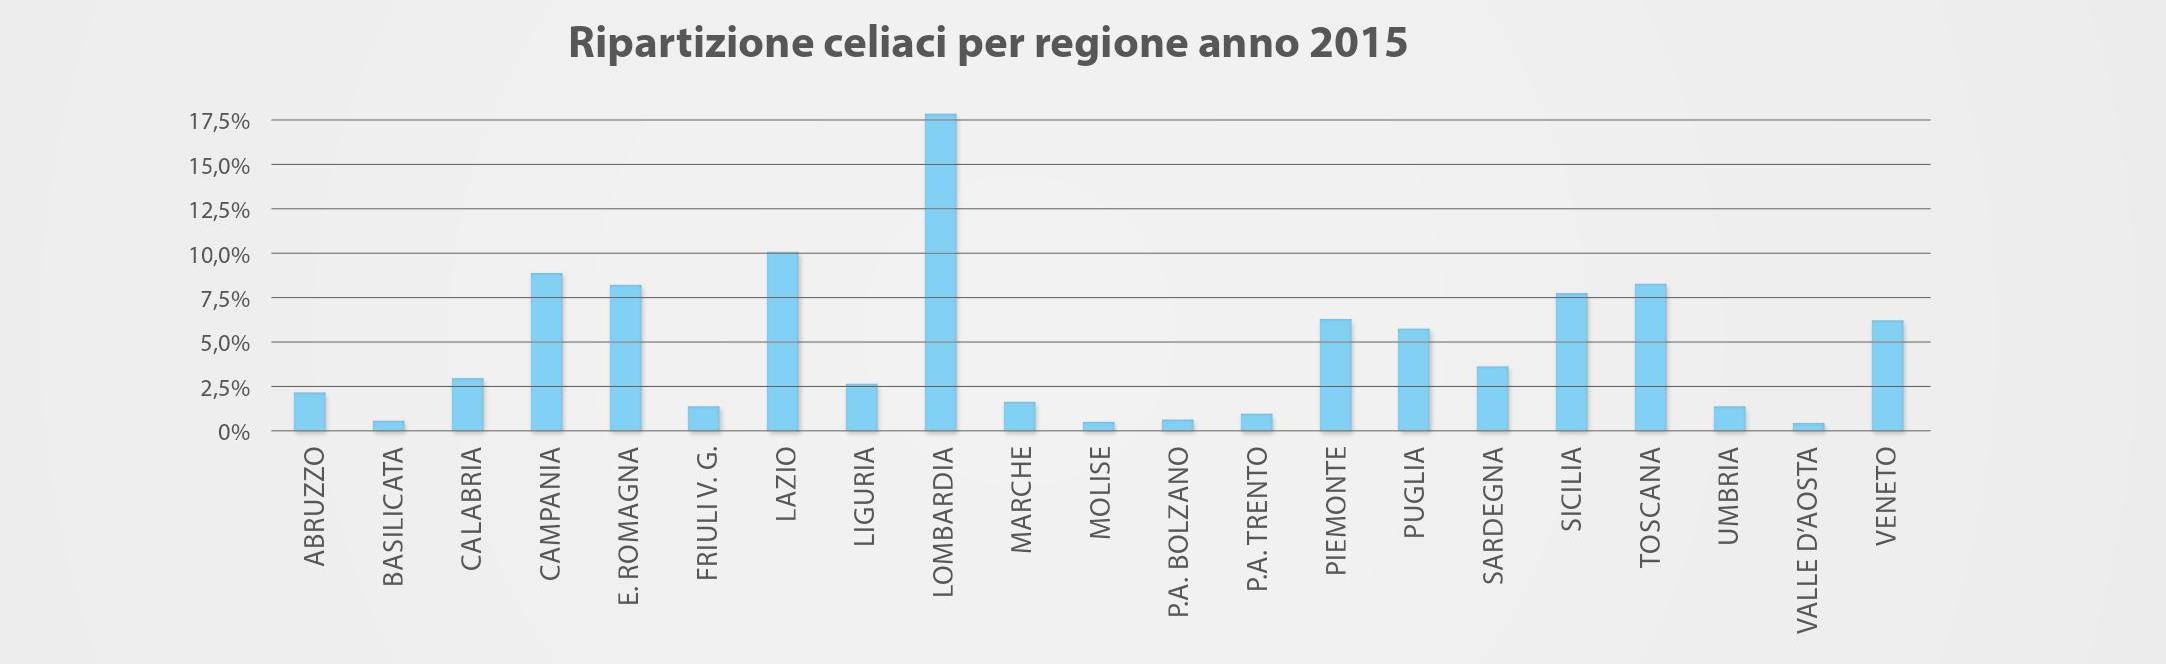 Celiaci per regione nel 2015